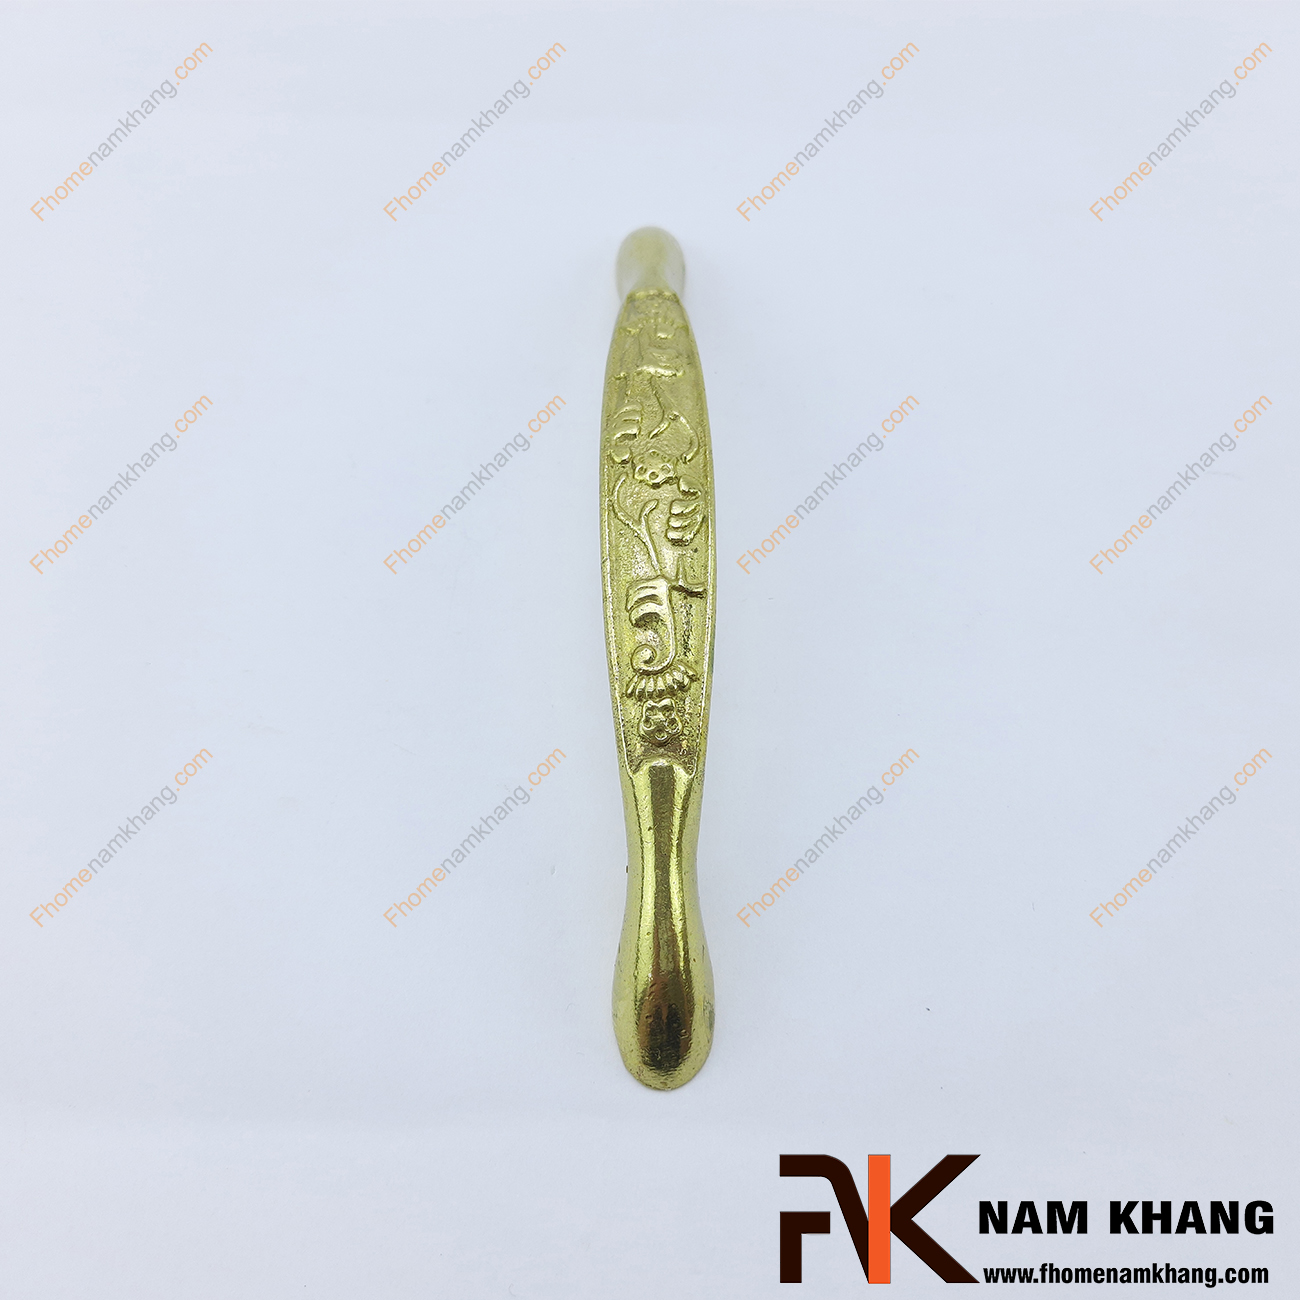 Với một phong cách thiết kế cổ điển, Tay nắm tủ đồng cổ điển NKD039-150 lấy họa tiết hoa lá nho chủ đạo ở thân tay nắm để làm nổi bật lên các họa tiết giữa nên bóng của đồng vàng.